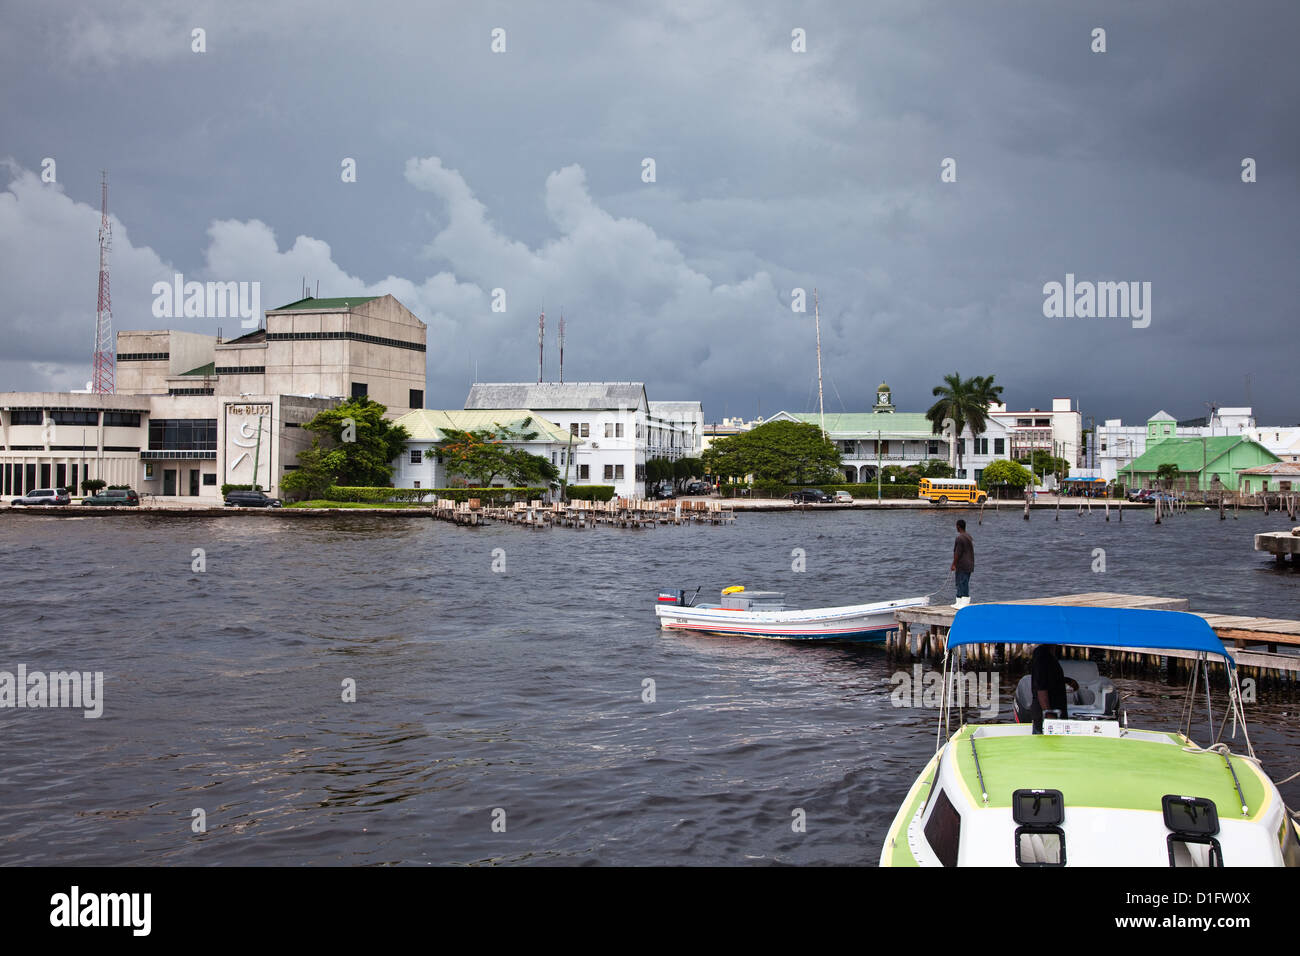 Autour du port comme une énorme tempête se déplace dans la ville de Belize. Banque D'Images